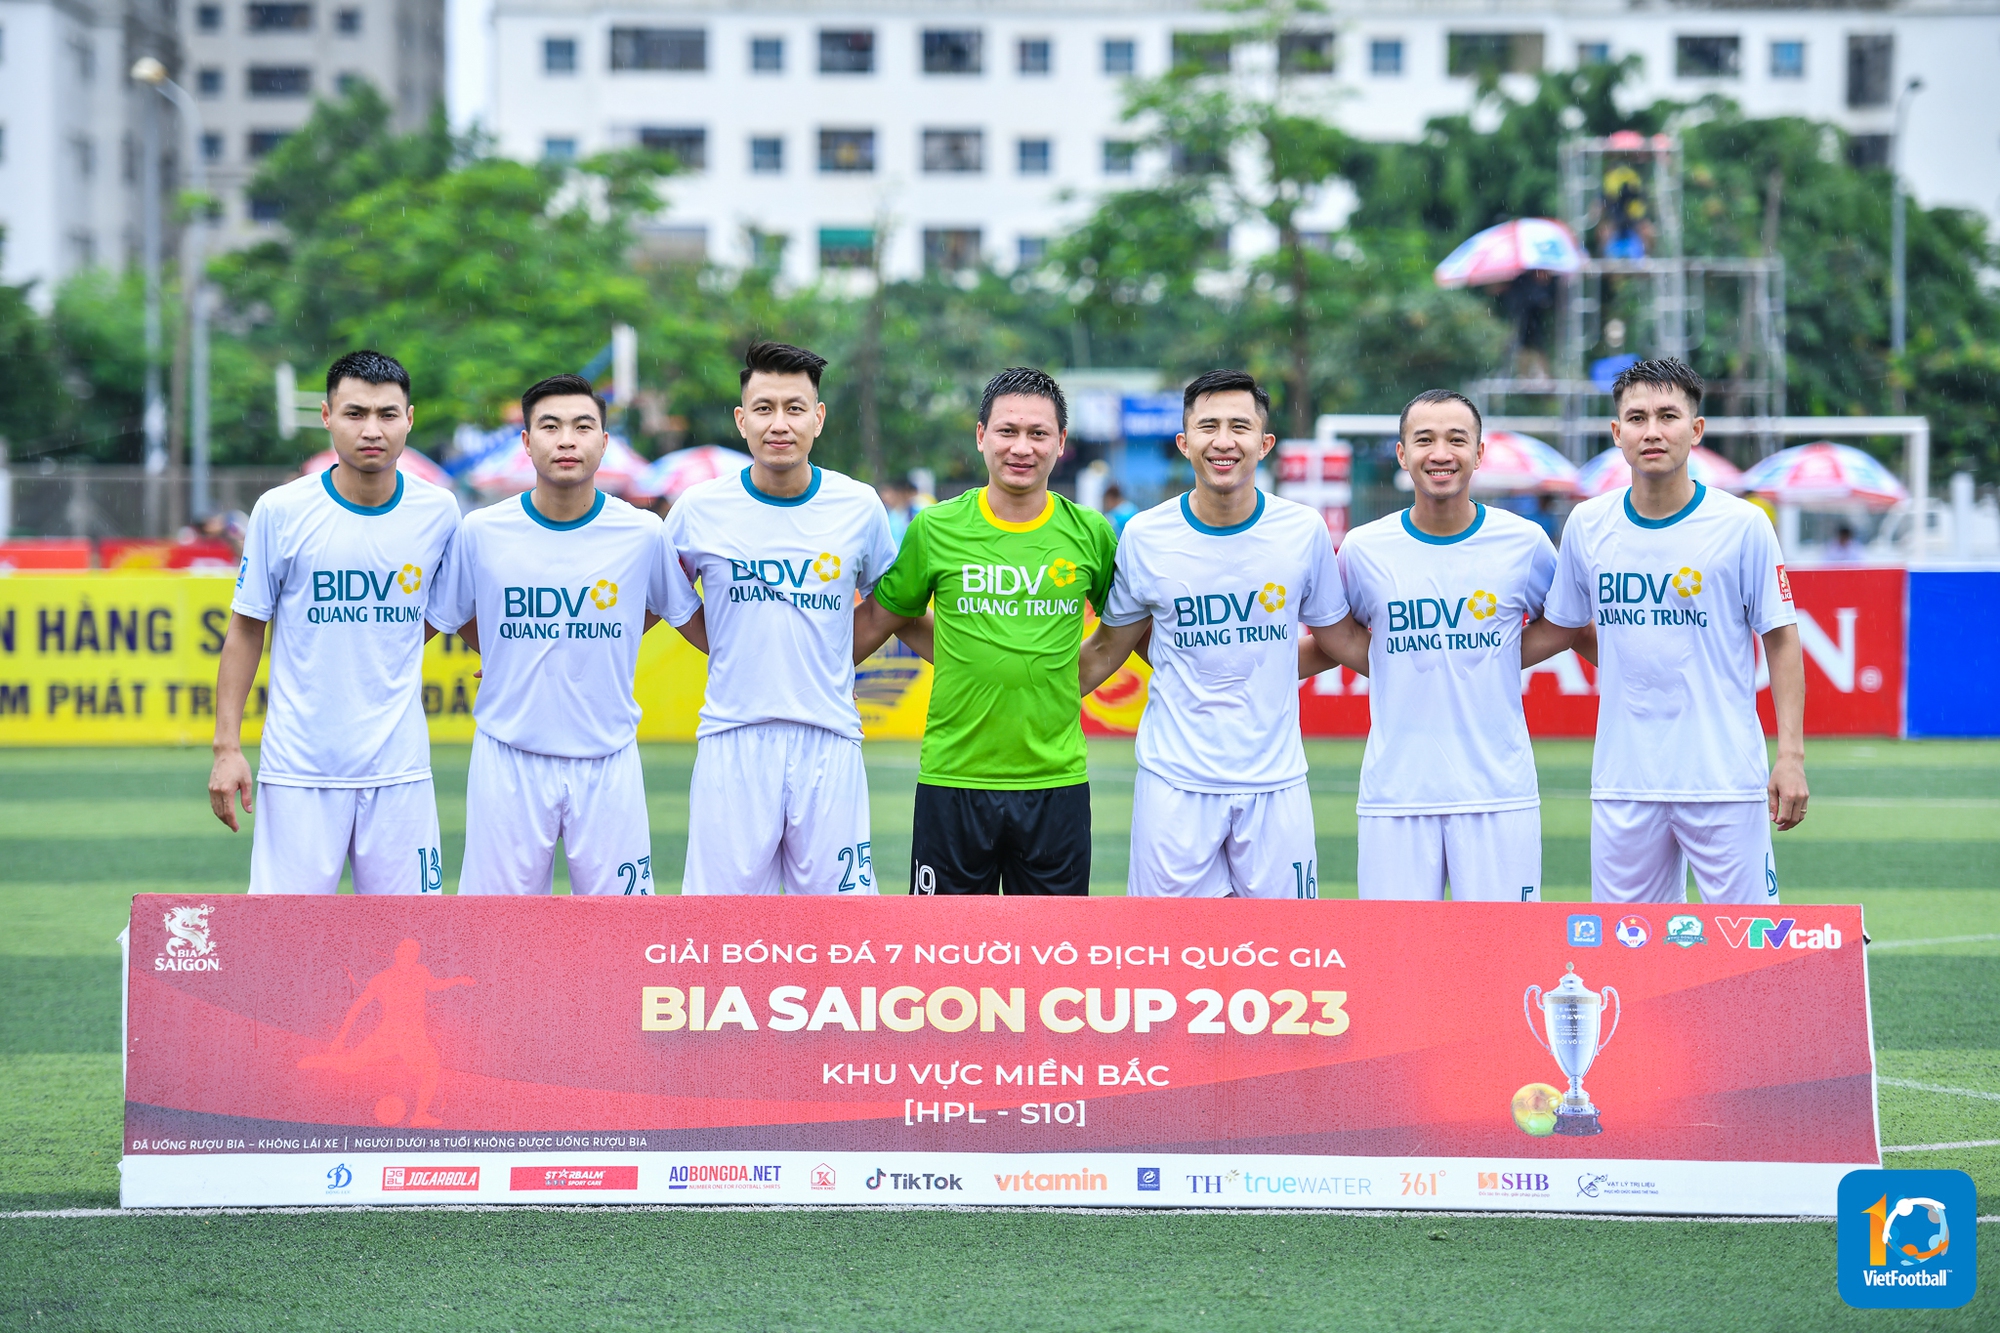 FC BIDV Quang Trung đang bay cao trên BXH HPL mùa này. Với những gì đã thể hiện, họ hoàn toàn có quyền nghĩ về ngôi vô địch.